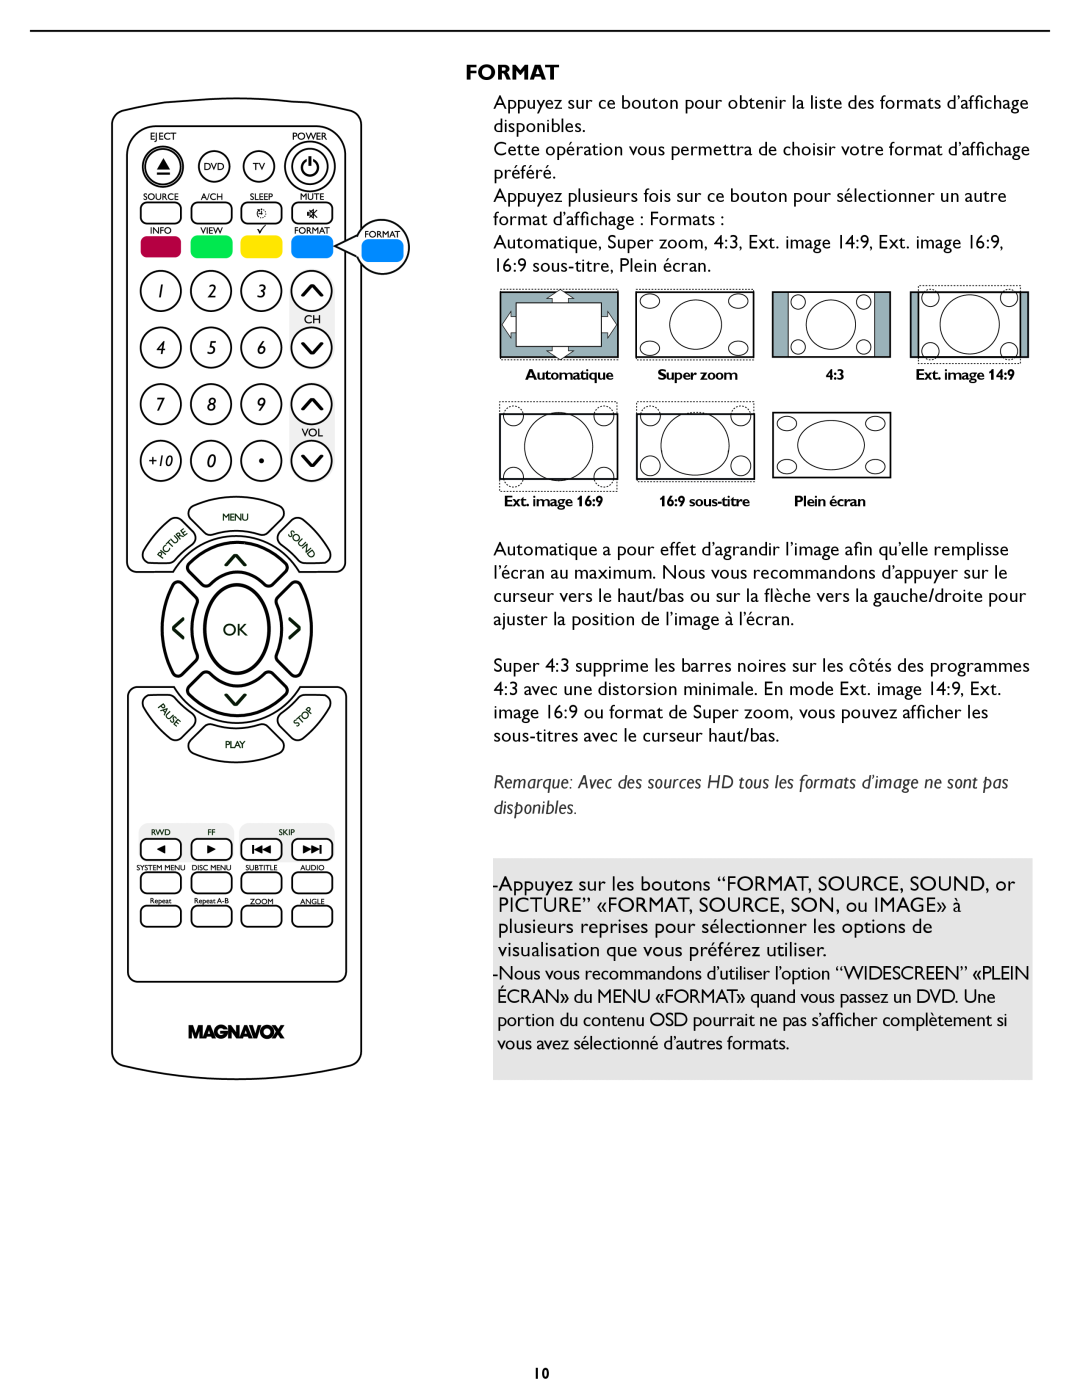 Magnavox 26MD/32MD251D user manual Format, Automatique, Super zoom, Ext. image, sous-titre 